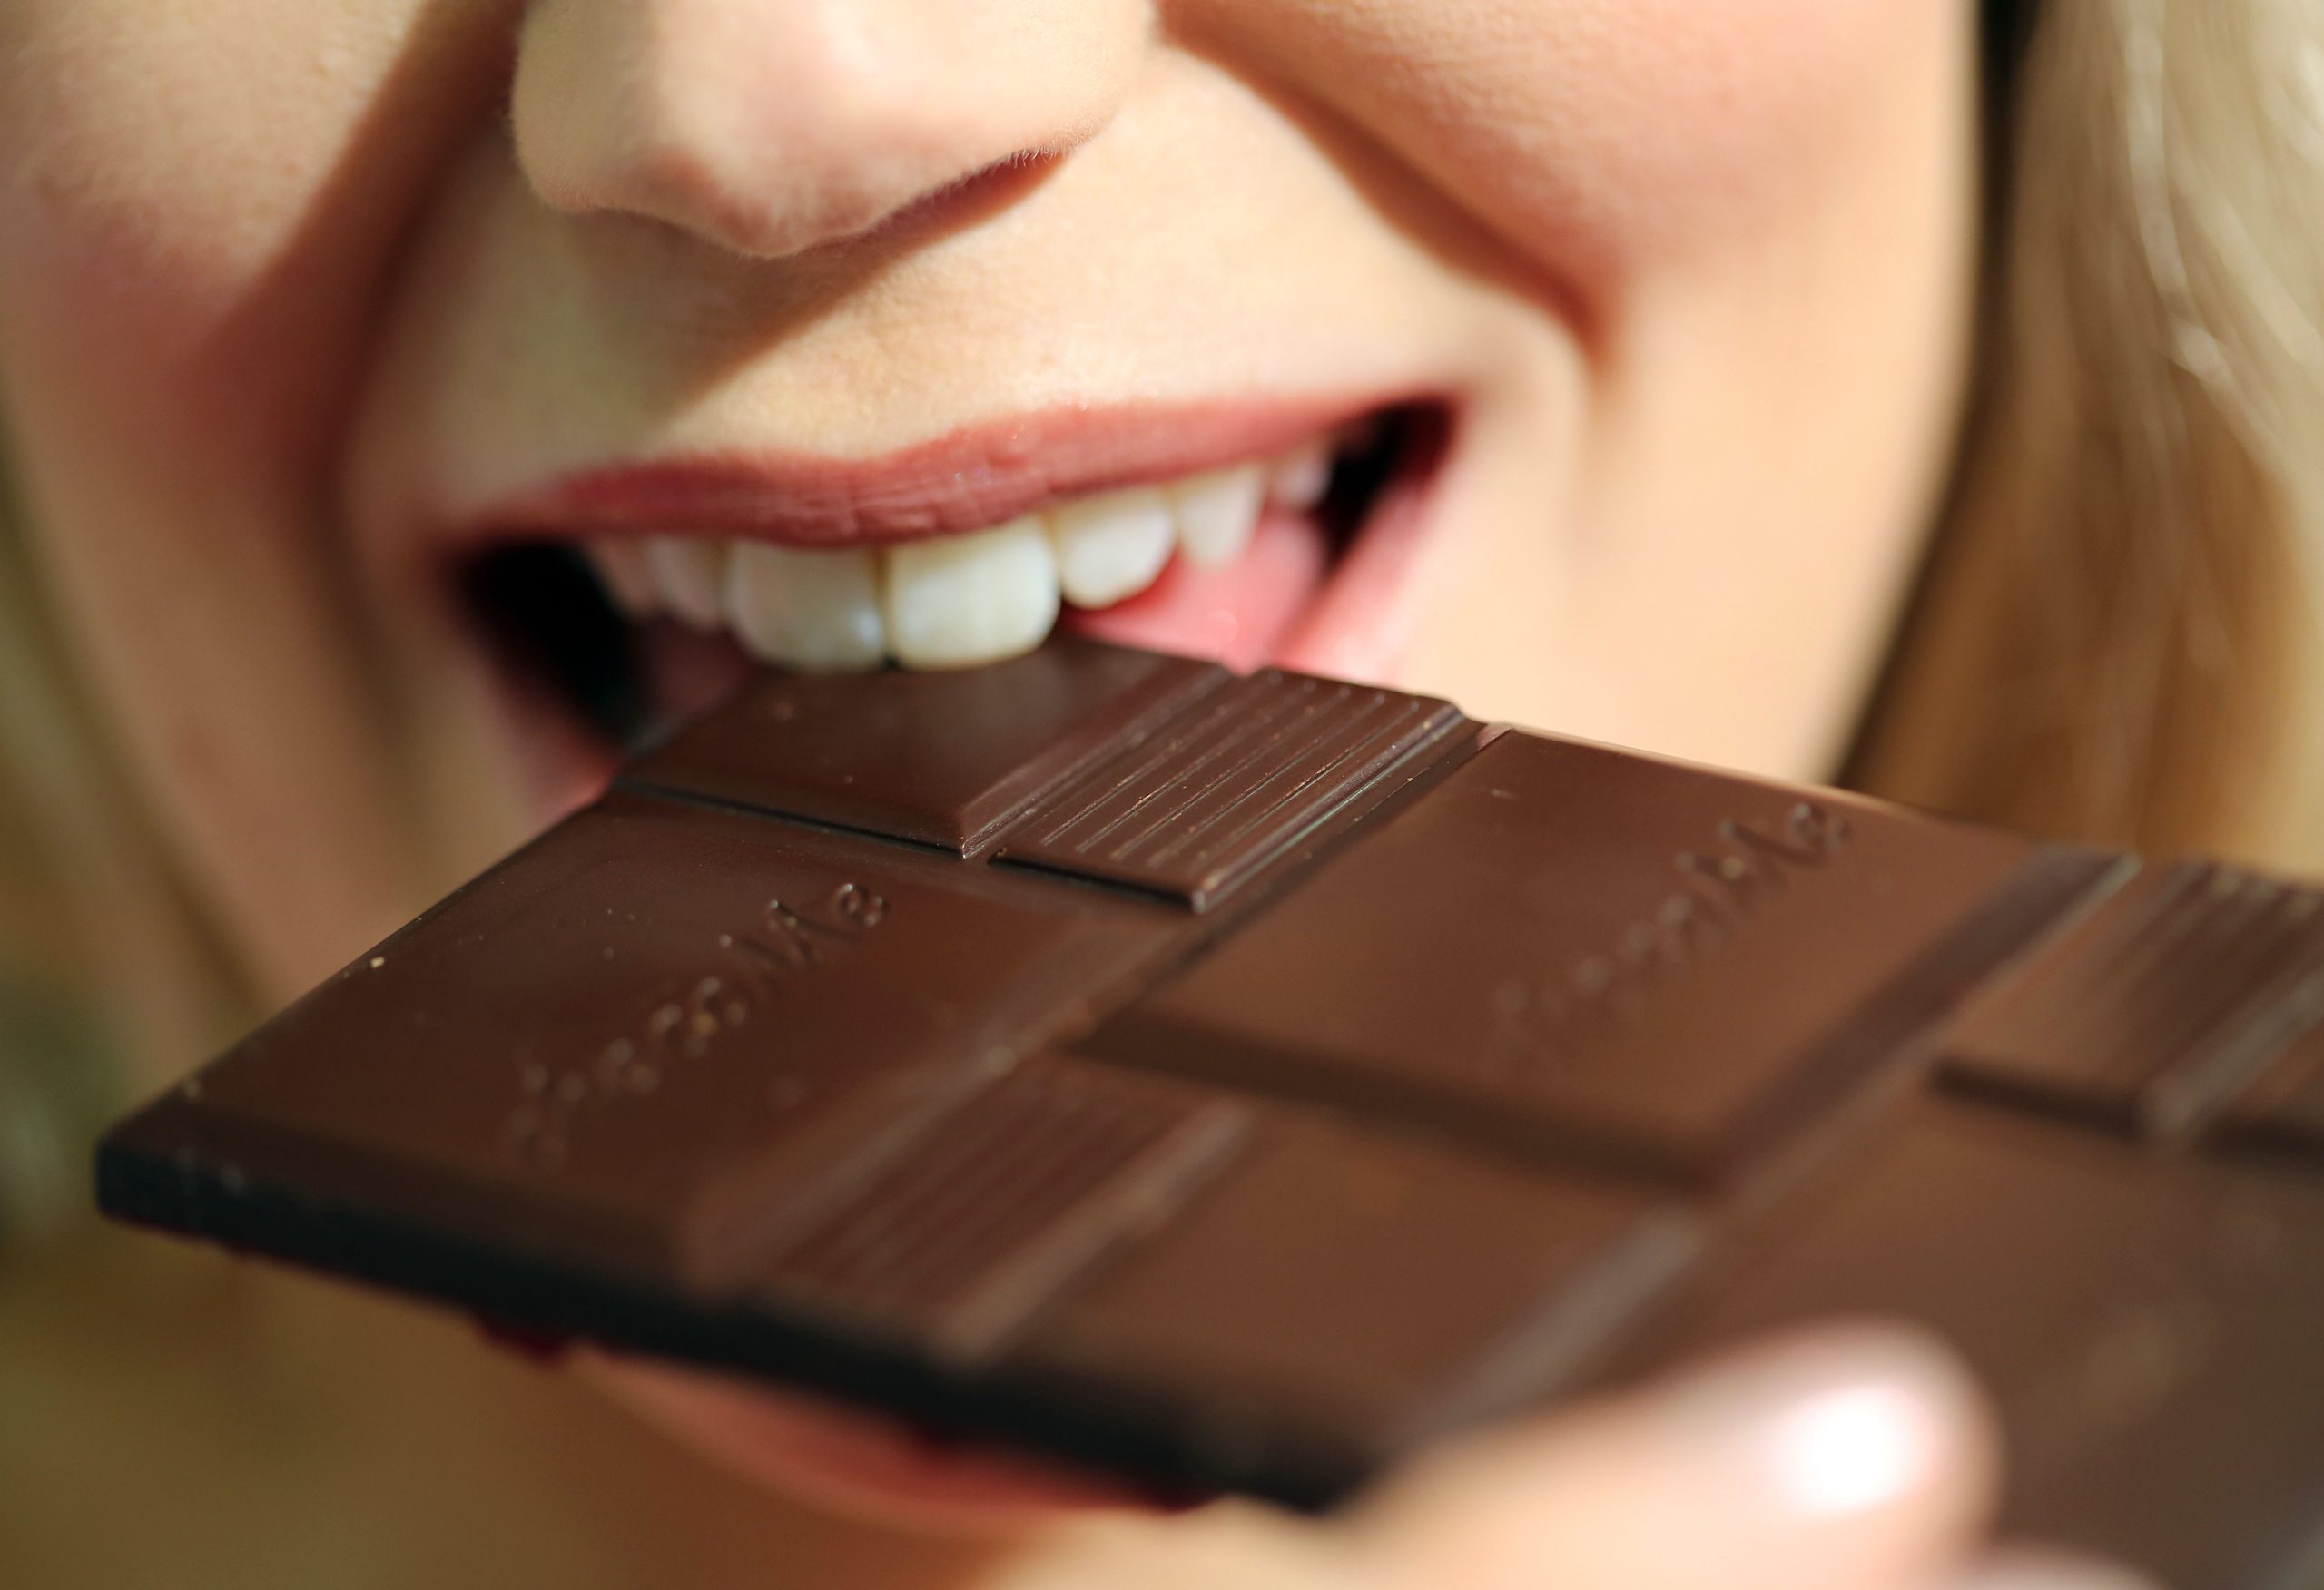 Milka, Kinder Schokolade oder doch Merci? Welche Schokolade ist die  beliebteste?